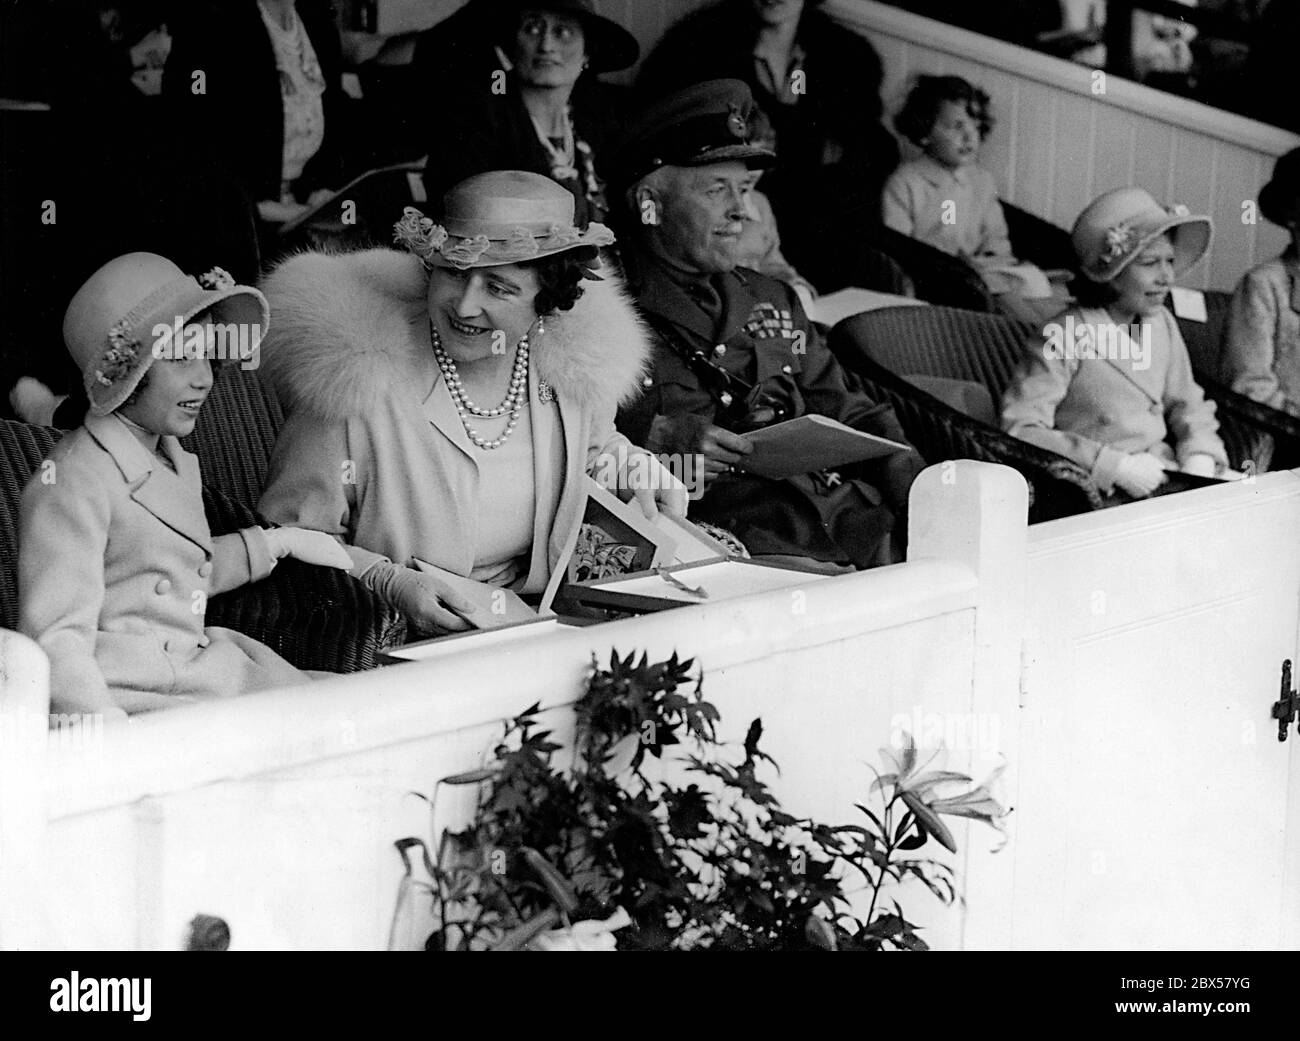 Elizabeth II, sa mère, la reine Elizabeth, et sa sœur, la princesse Margaret Rose, assistent à une répétition du Tattoo militaire d'Aldershot, un événement militaire majeur à l'arène Rushmoor. Plusieurs milliers d'enfants ont été autorisés à regarder l'événement gratuitement. De gauche à droite : la reine Elizabeth II, la reine Elizabeth, le général Sir Frederick Gaythorne-Hardy, le commandant en chef d'Aldershot et la princesse Margaret Rose. Banque D'Images